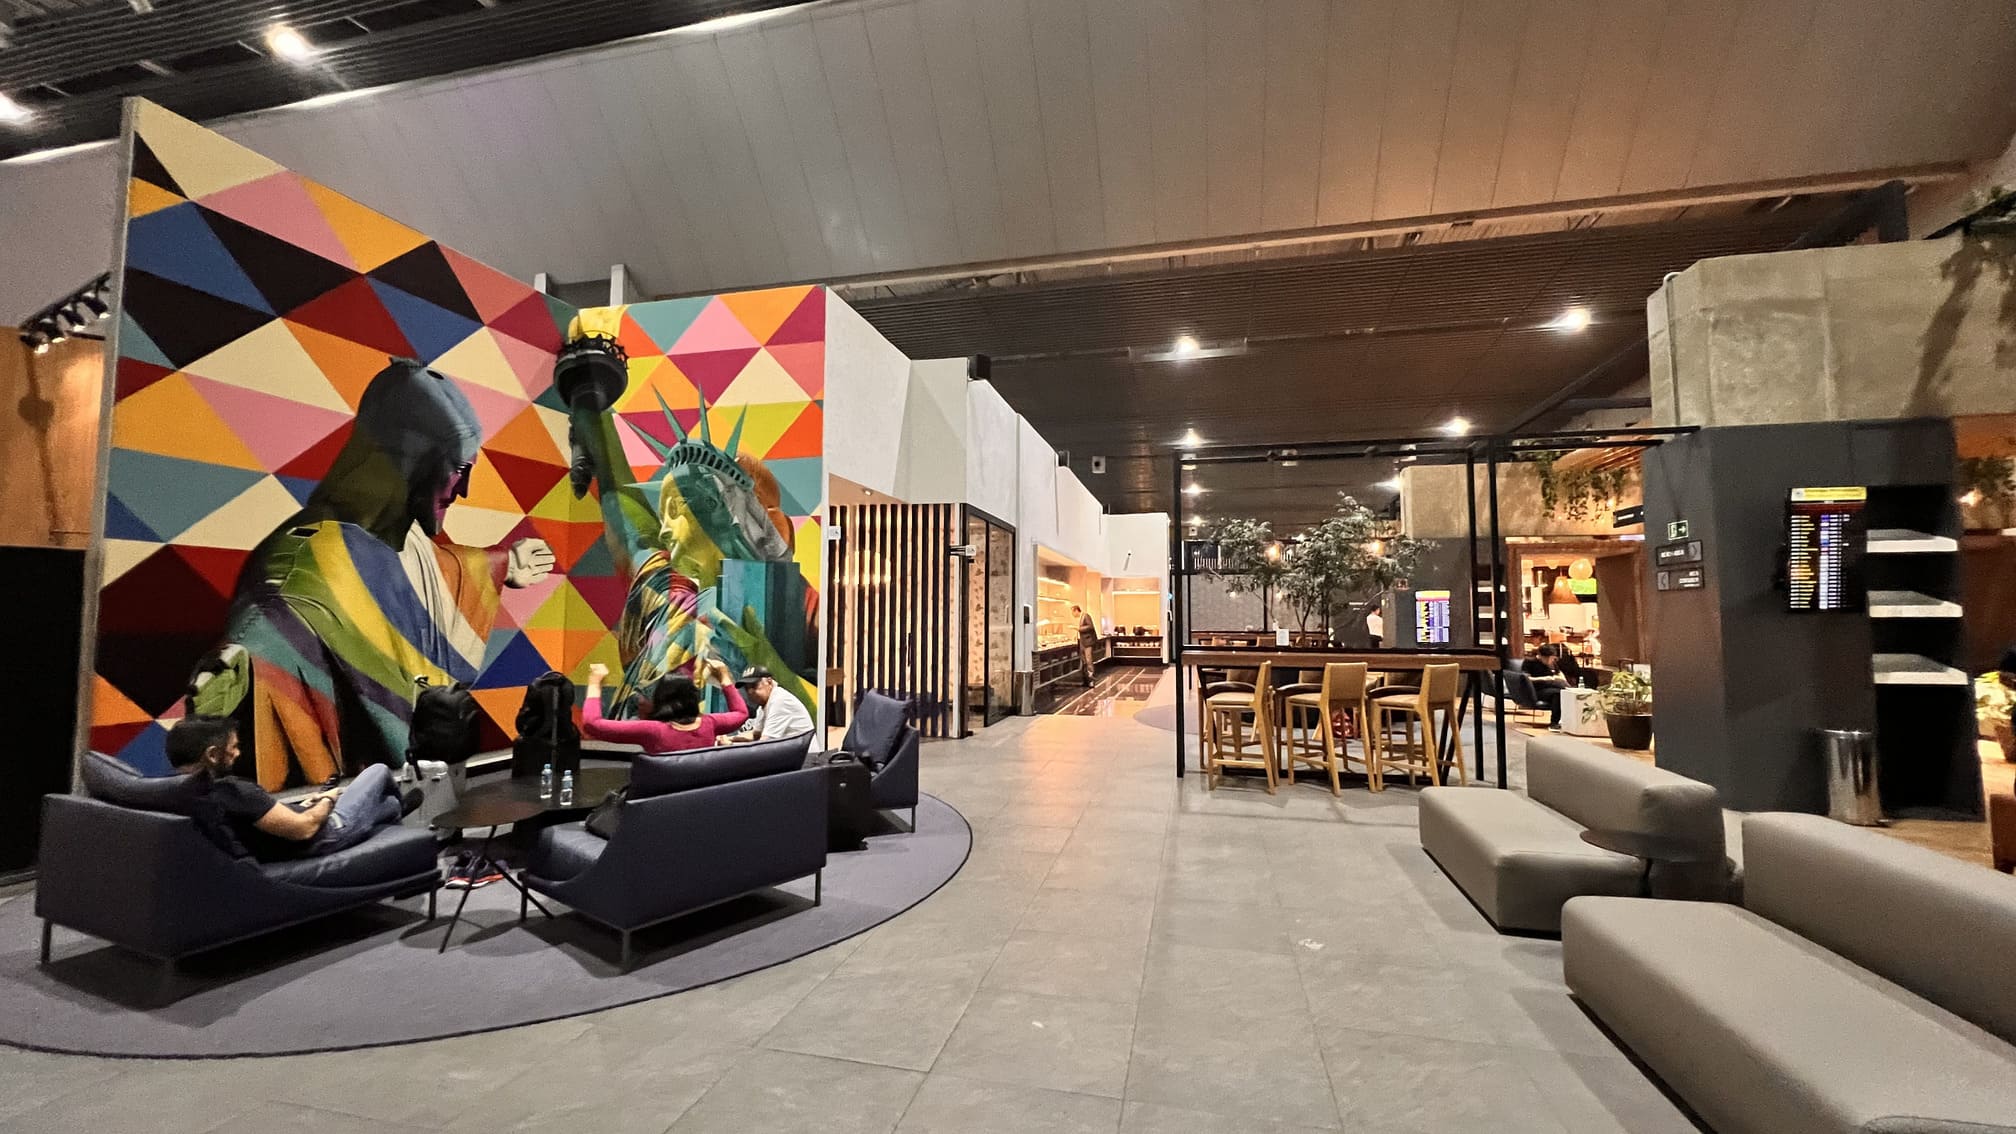 Sala VIP Centurion Lounge da American Express Aeroporto de Guarulhos. Este lounge é espaçoso e apresenta um design tradicional. Oferece um buffet com diversas opções quentes e frias, um bar, área dedicada à leitura e trabalho, instalações para conferência e sala de silêncio